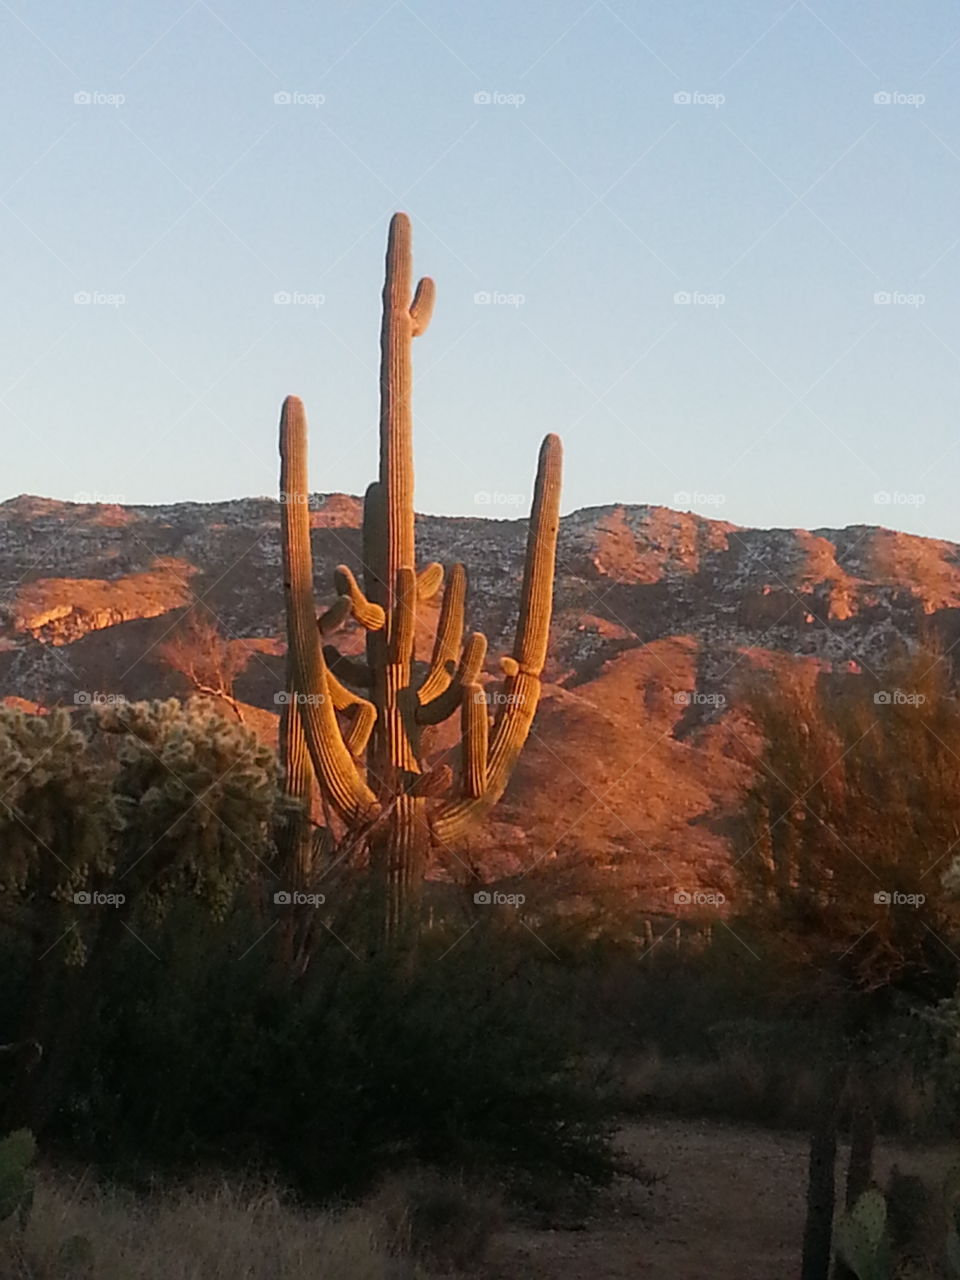 Large, old saguaro in the setting sun